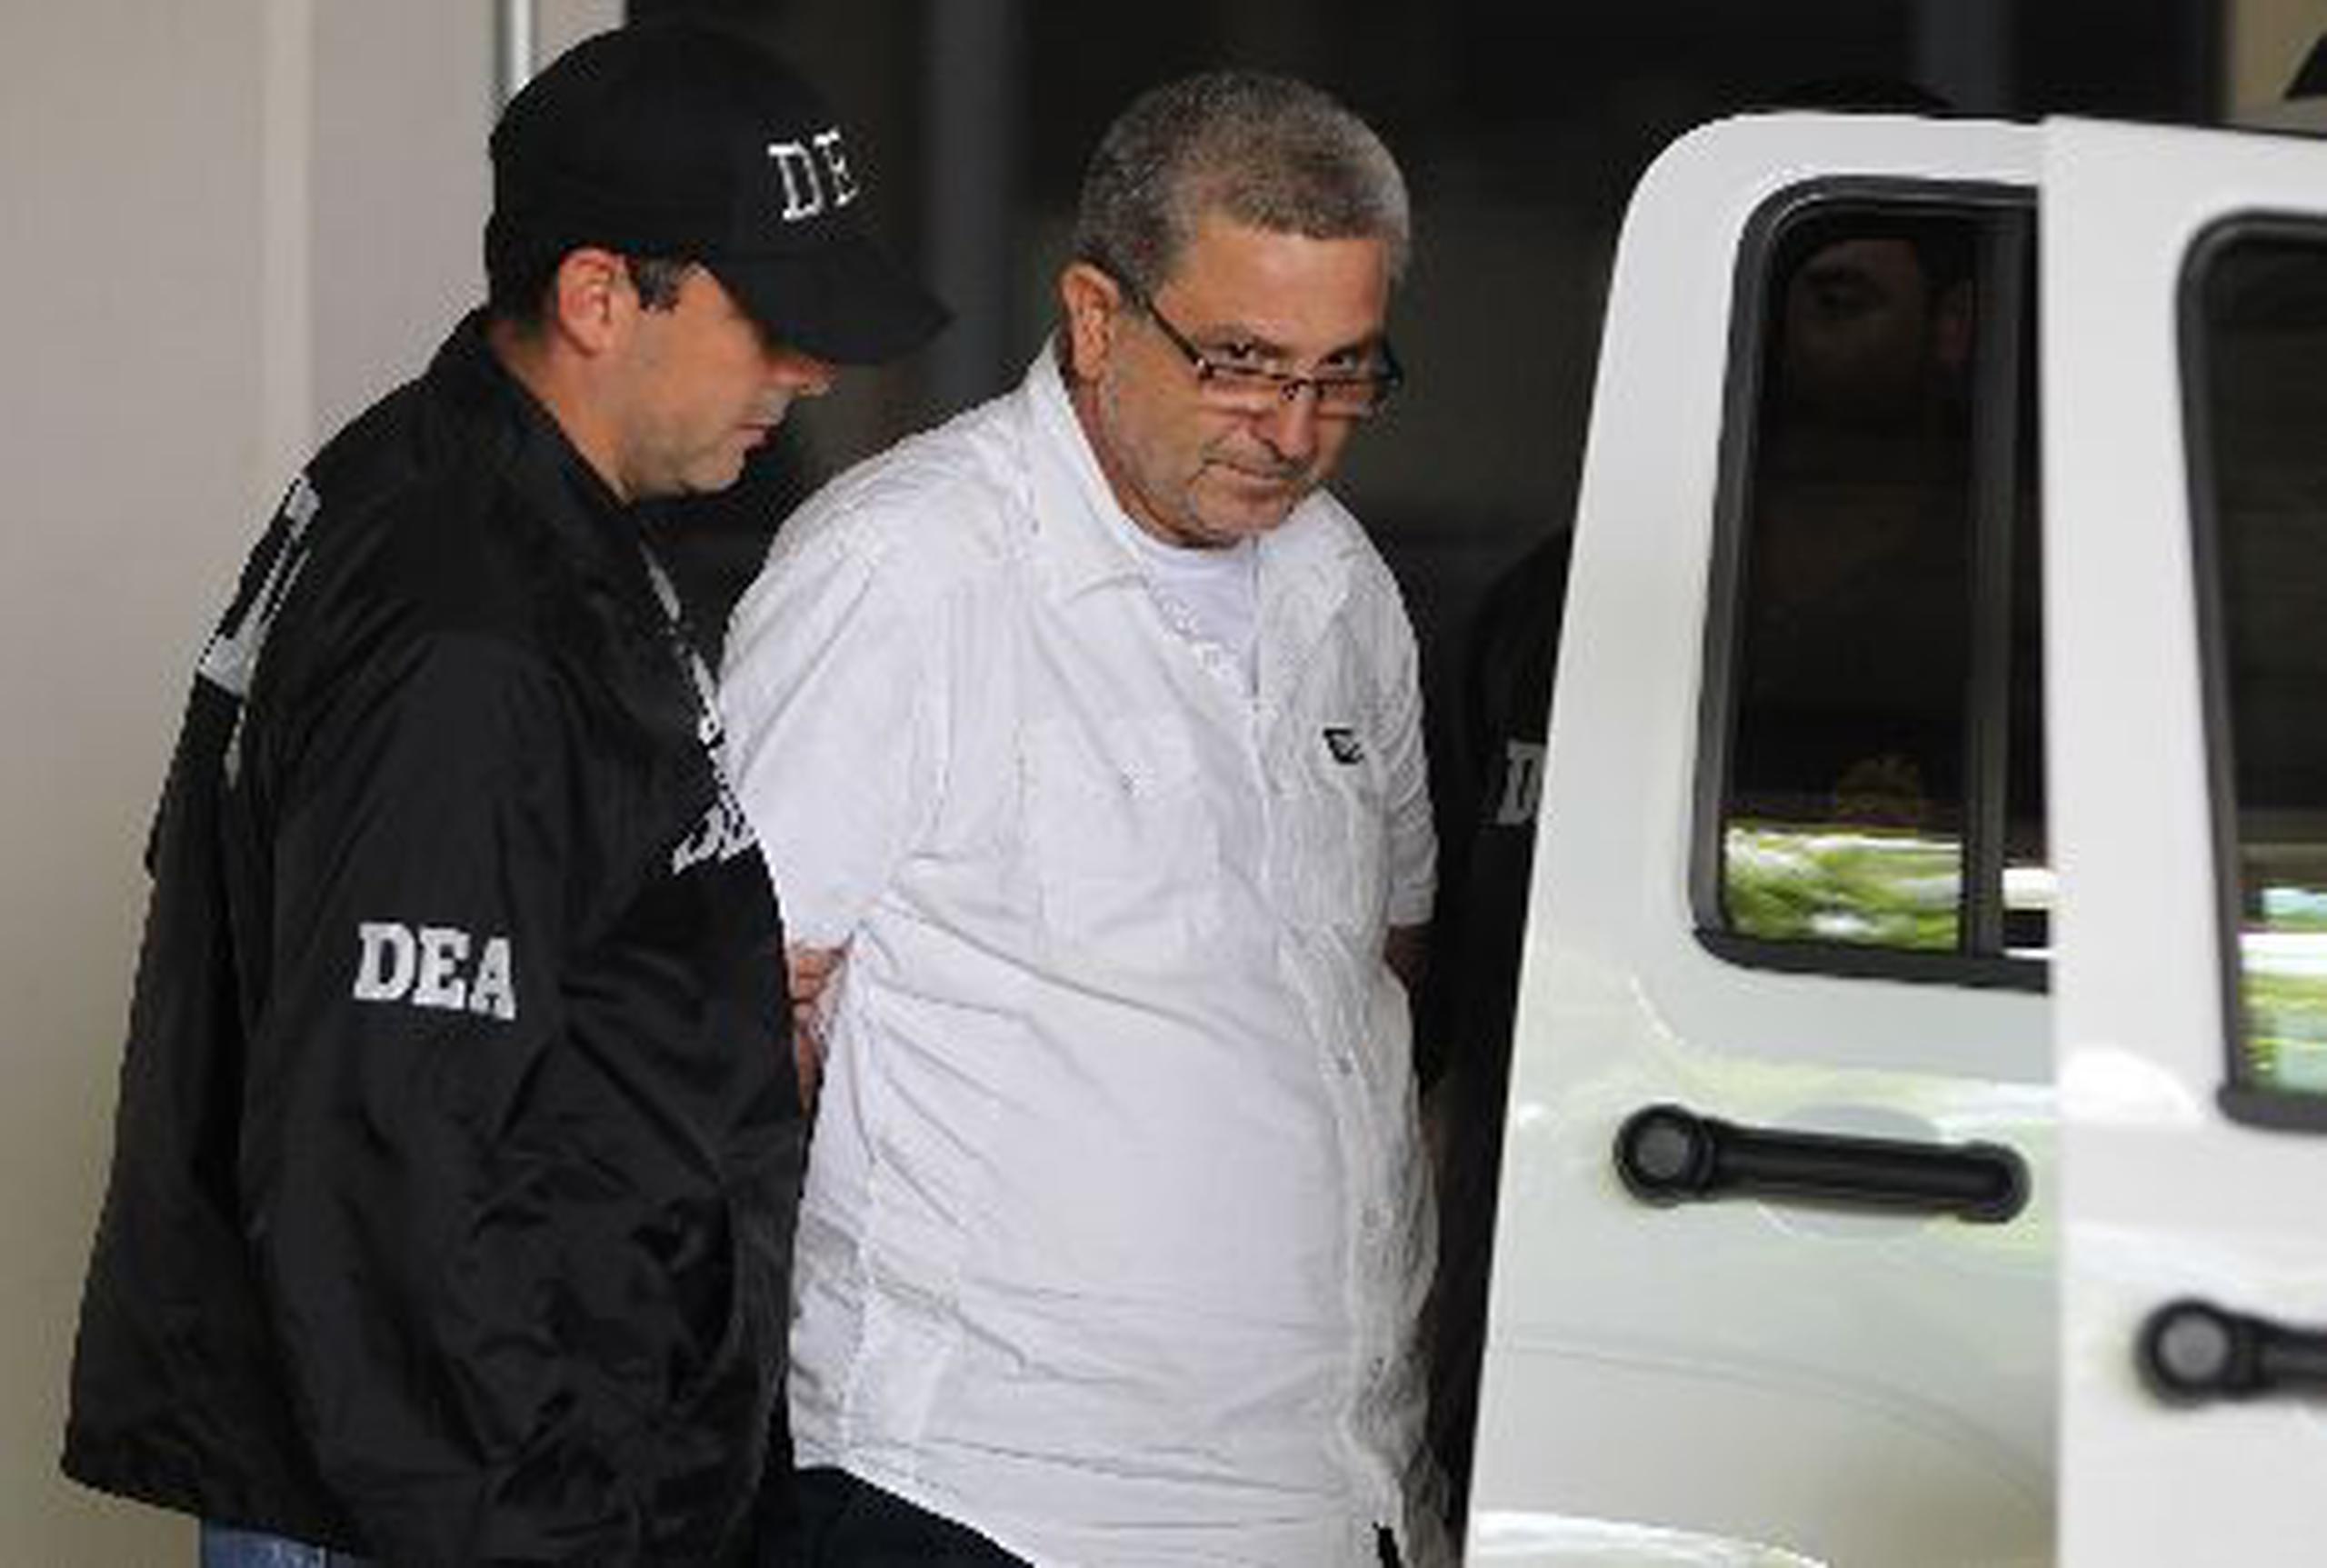  La DEA arrestó el miércoles a Dante Tagliaventi luego que éste llegara al aeropuerto Las Américas de Santo Domingo, y fue extraditado inmediatamente  a Puerto Rico.&nbsp;<font color="yellow">(Primera Hora / Teresa Canino Rivera)</font>